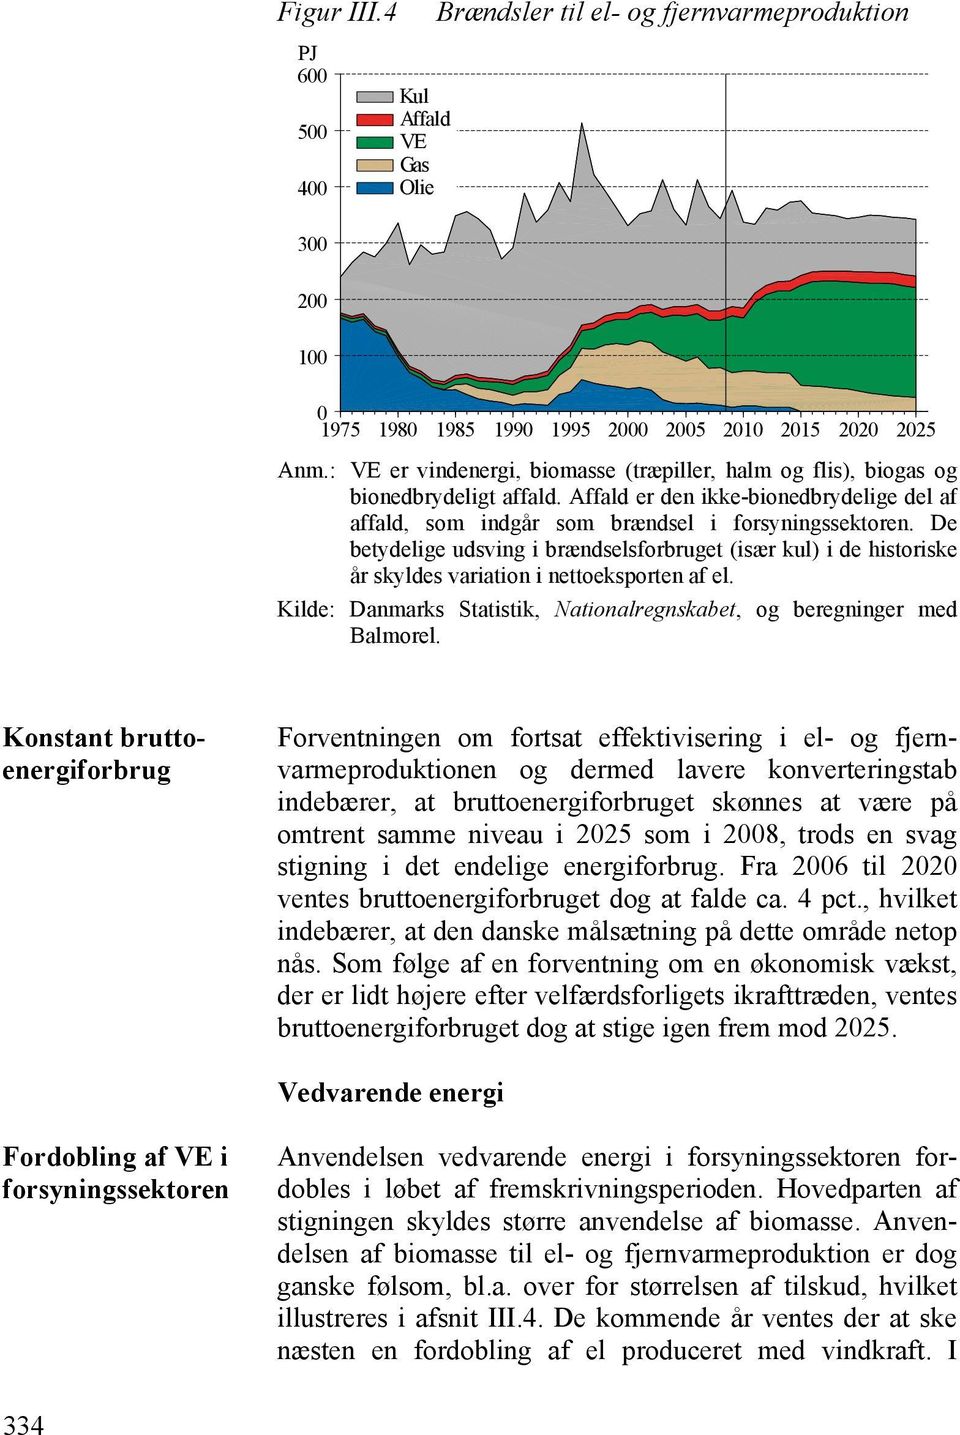 De betydelige udsving i brændselsforbruget (især kul) i de historiske år skyldes variation i nettoeksporten af el. Kilde: Danmarks Statistik, Nationalregnskabet, og beregninger med Balmorel.